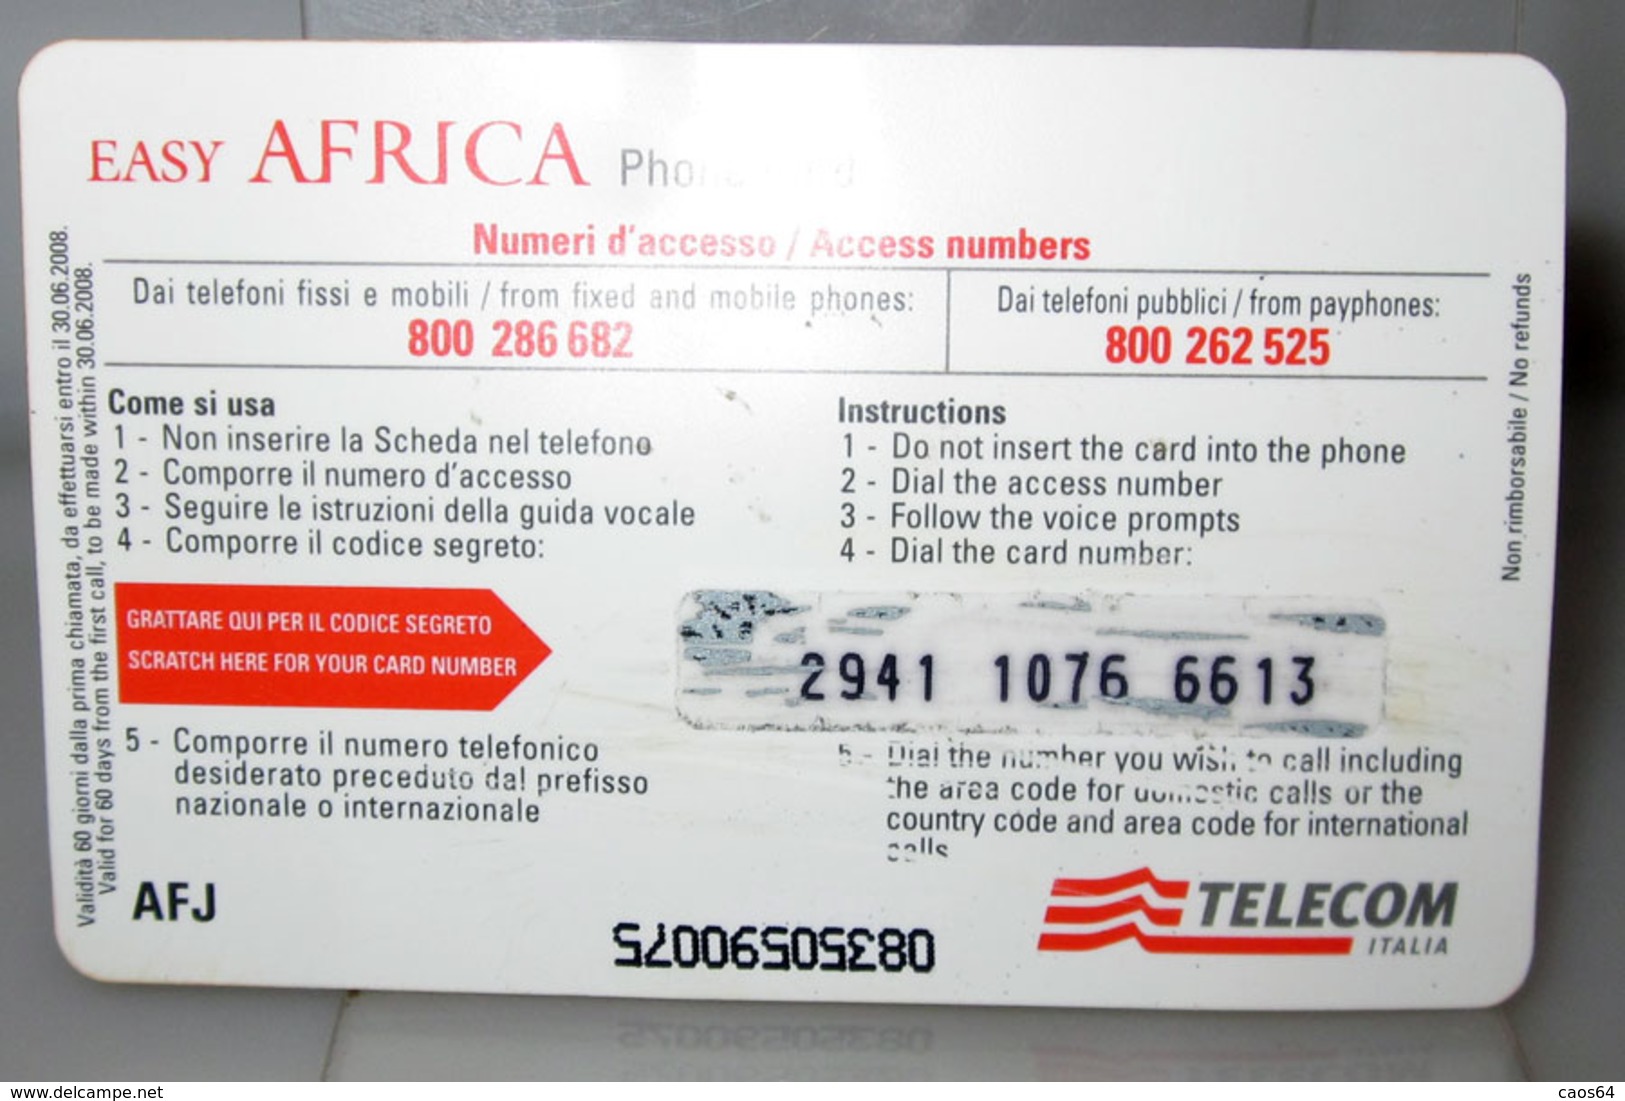 TELECOM EASY AFRICA PHONE CARD € 5.00 - Schede GSM, Prepagate & Ricariche